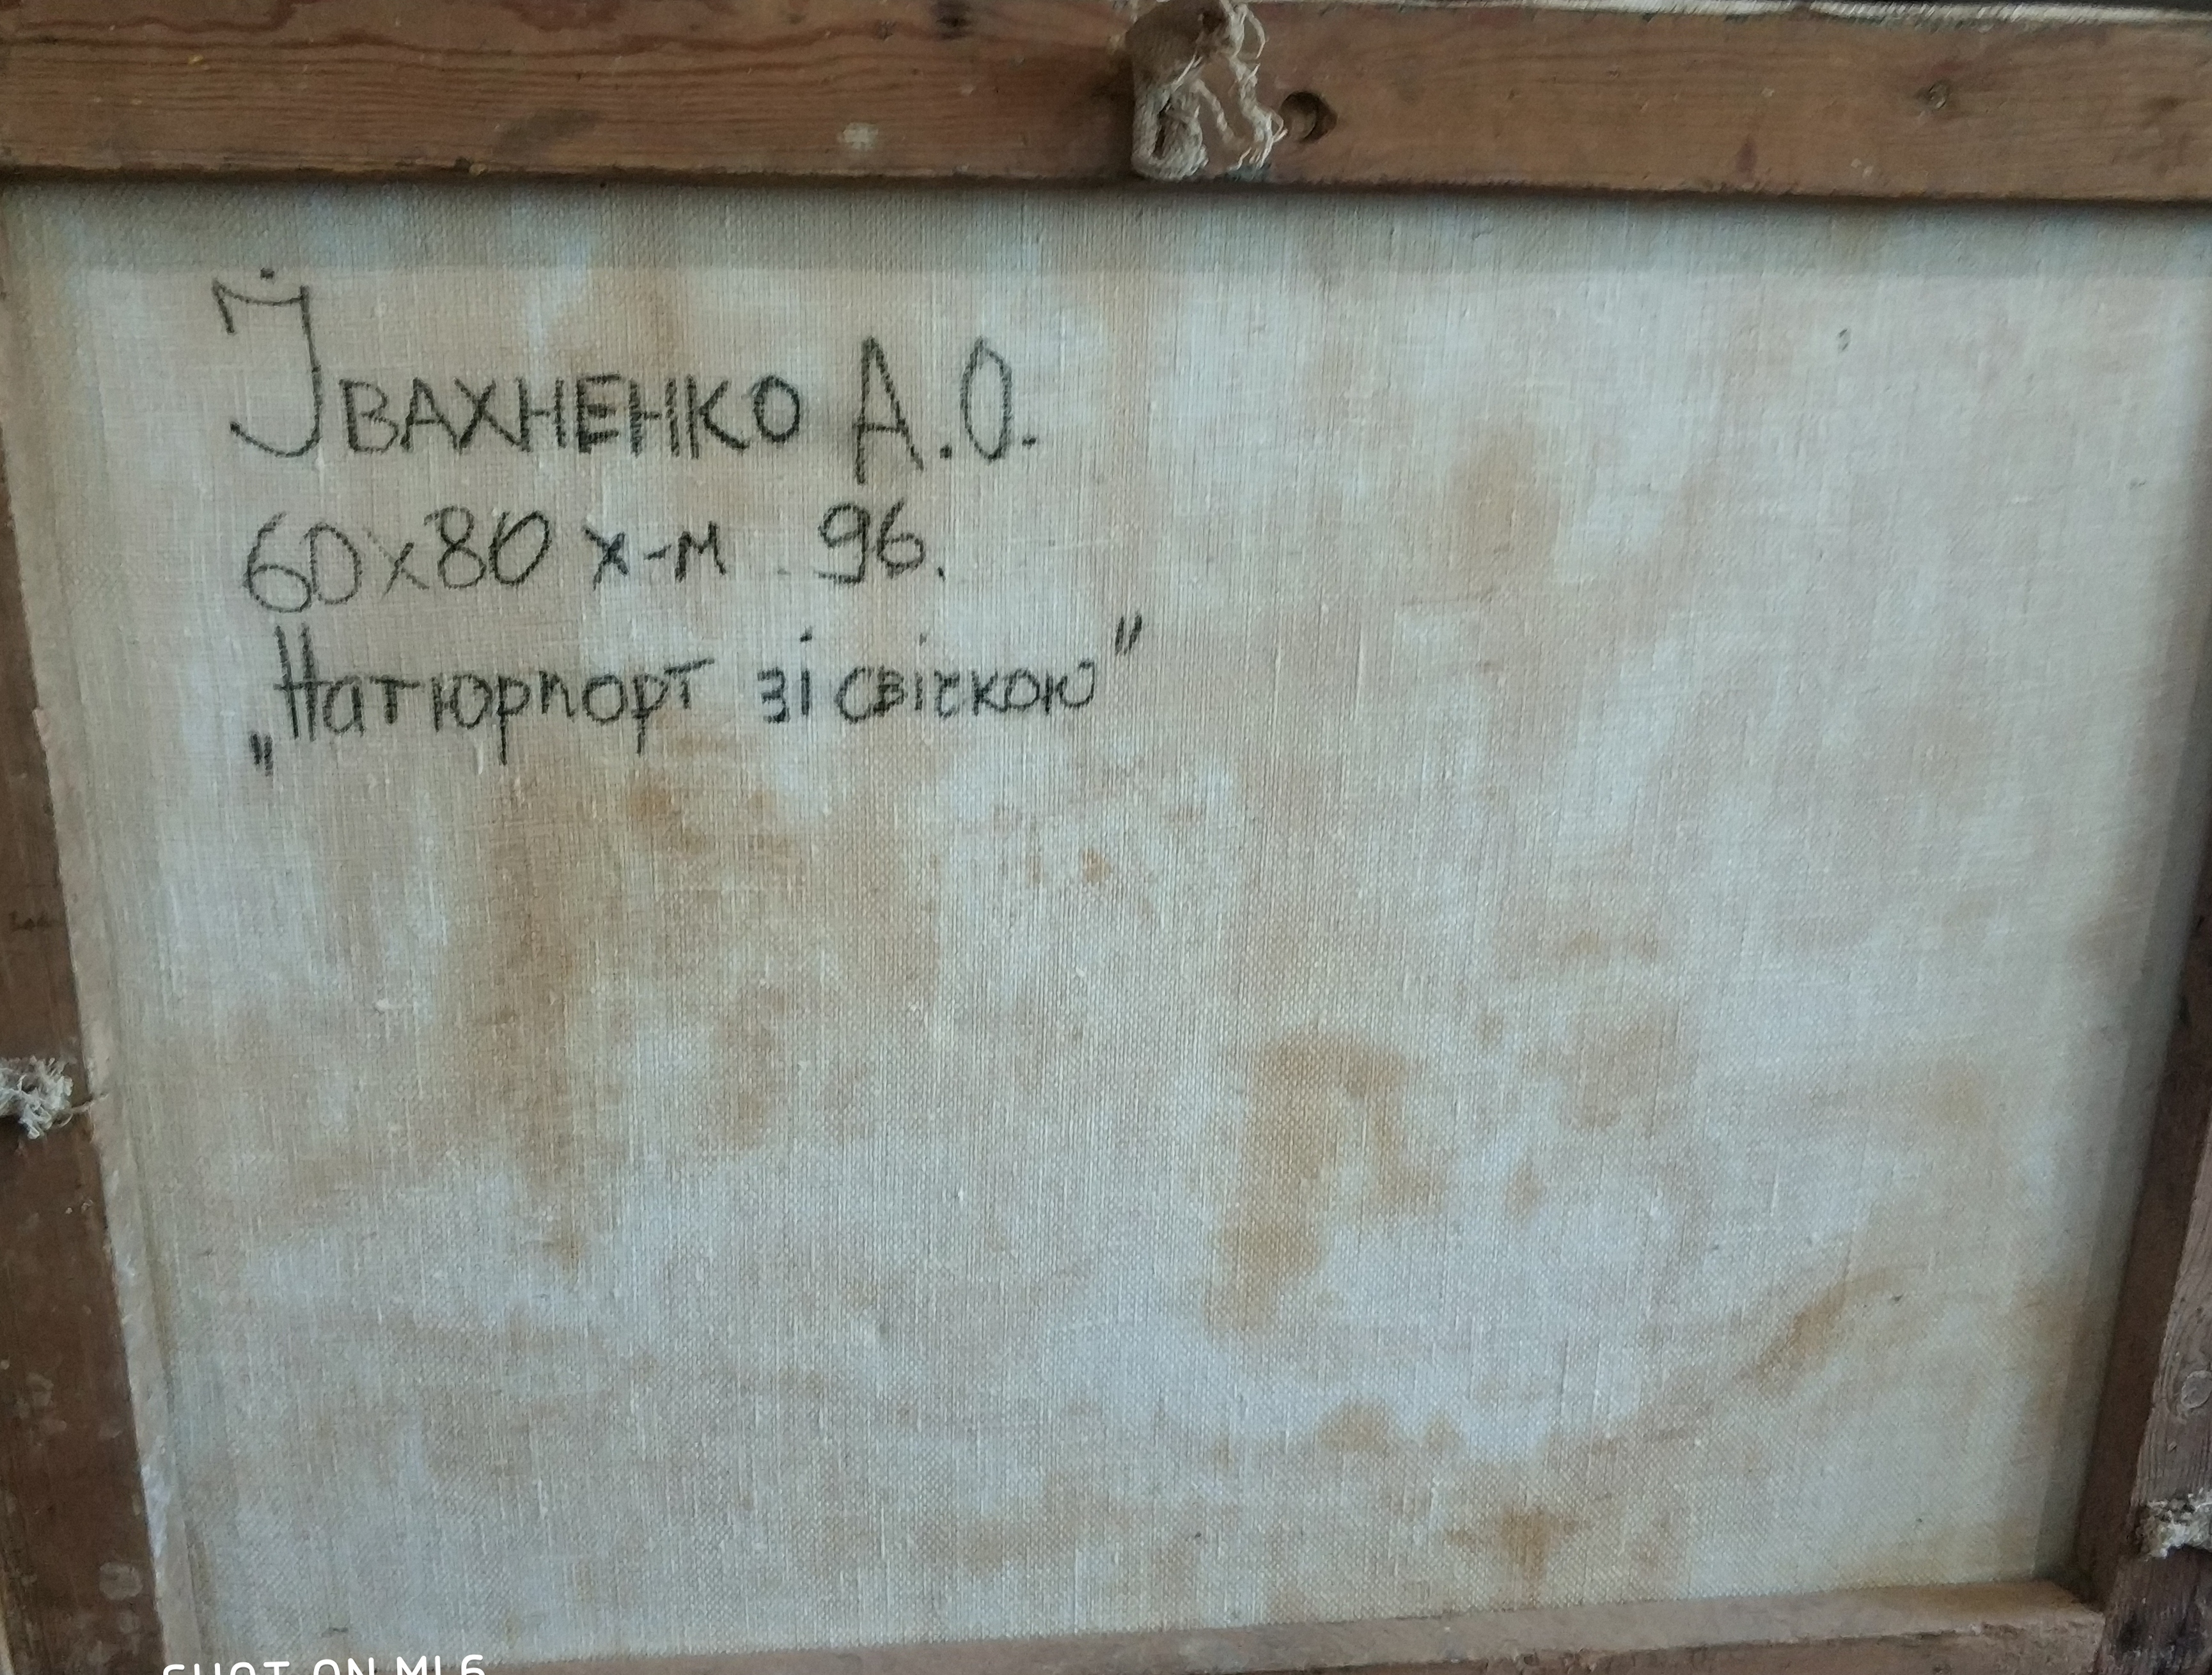 Ивахненко А.О. Натюрморт с свечою 60-80 см., холст, масло 1996 год  - 1